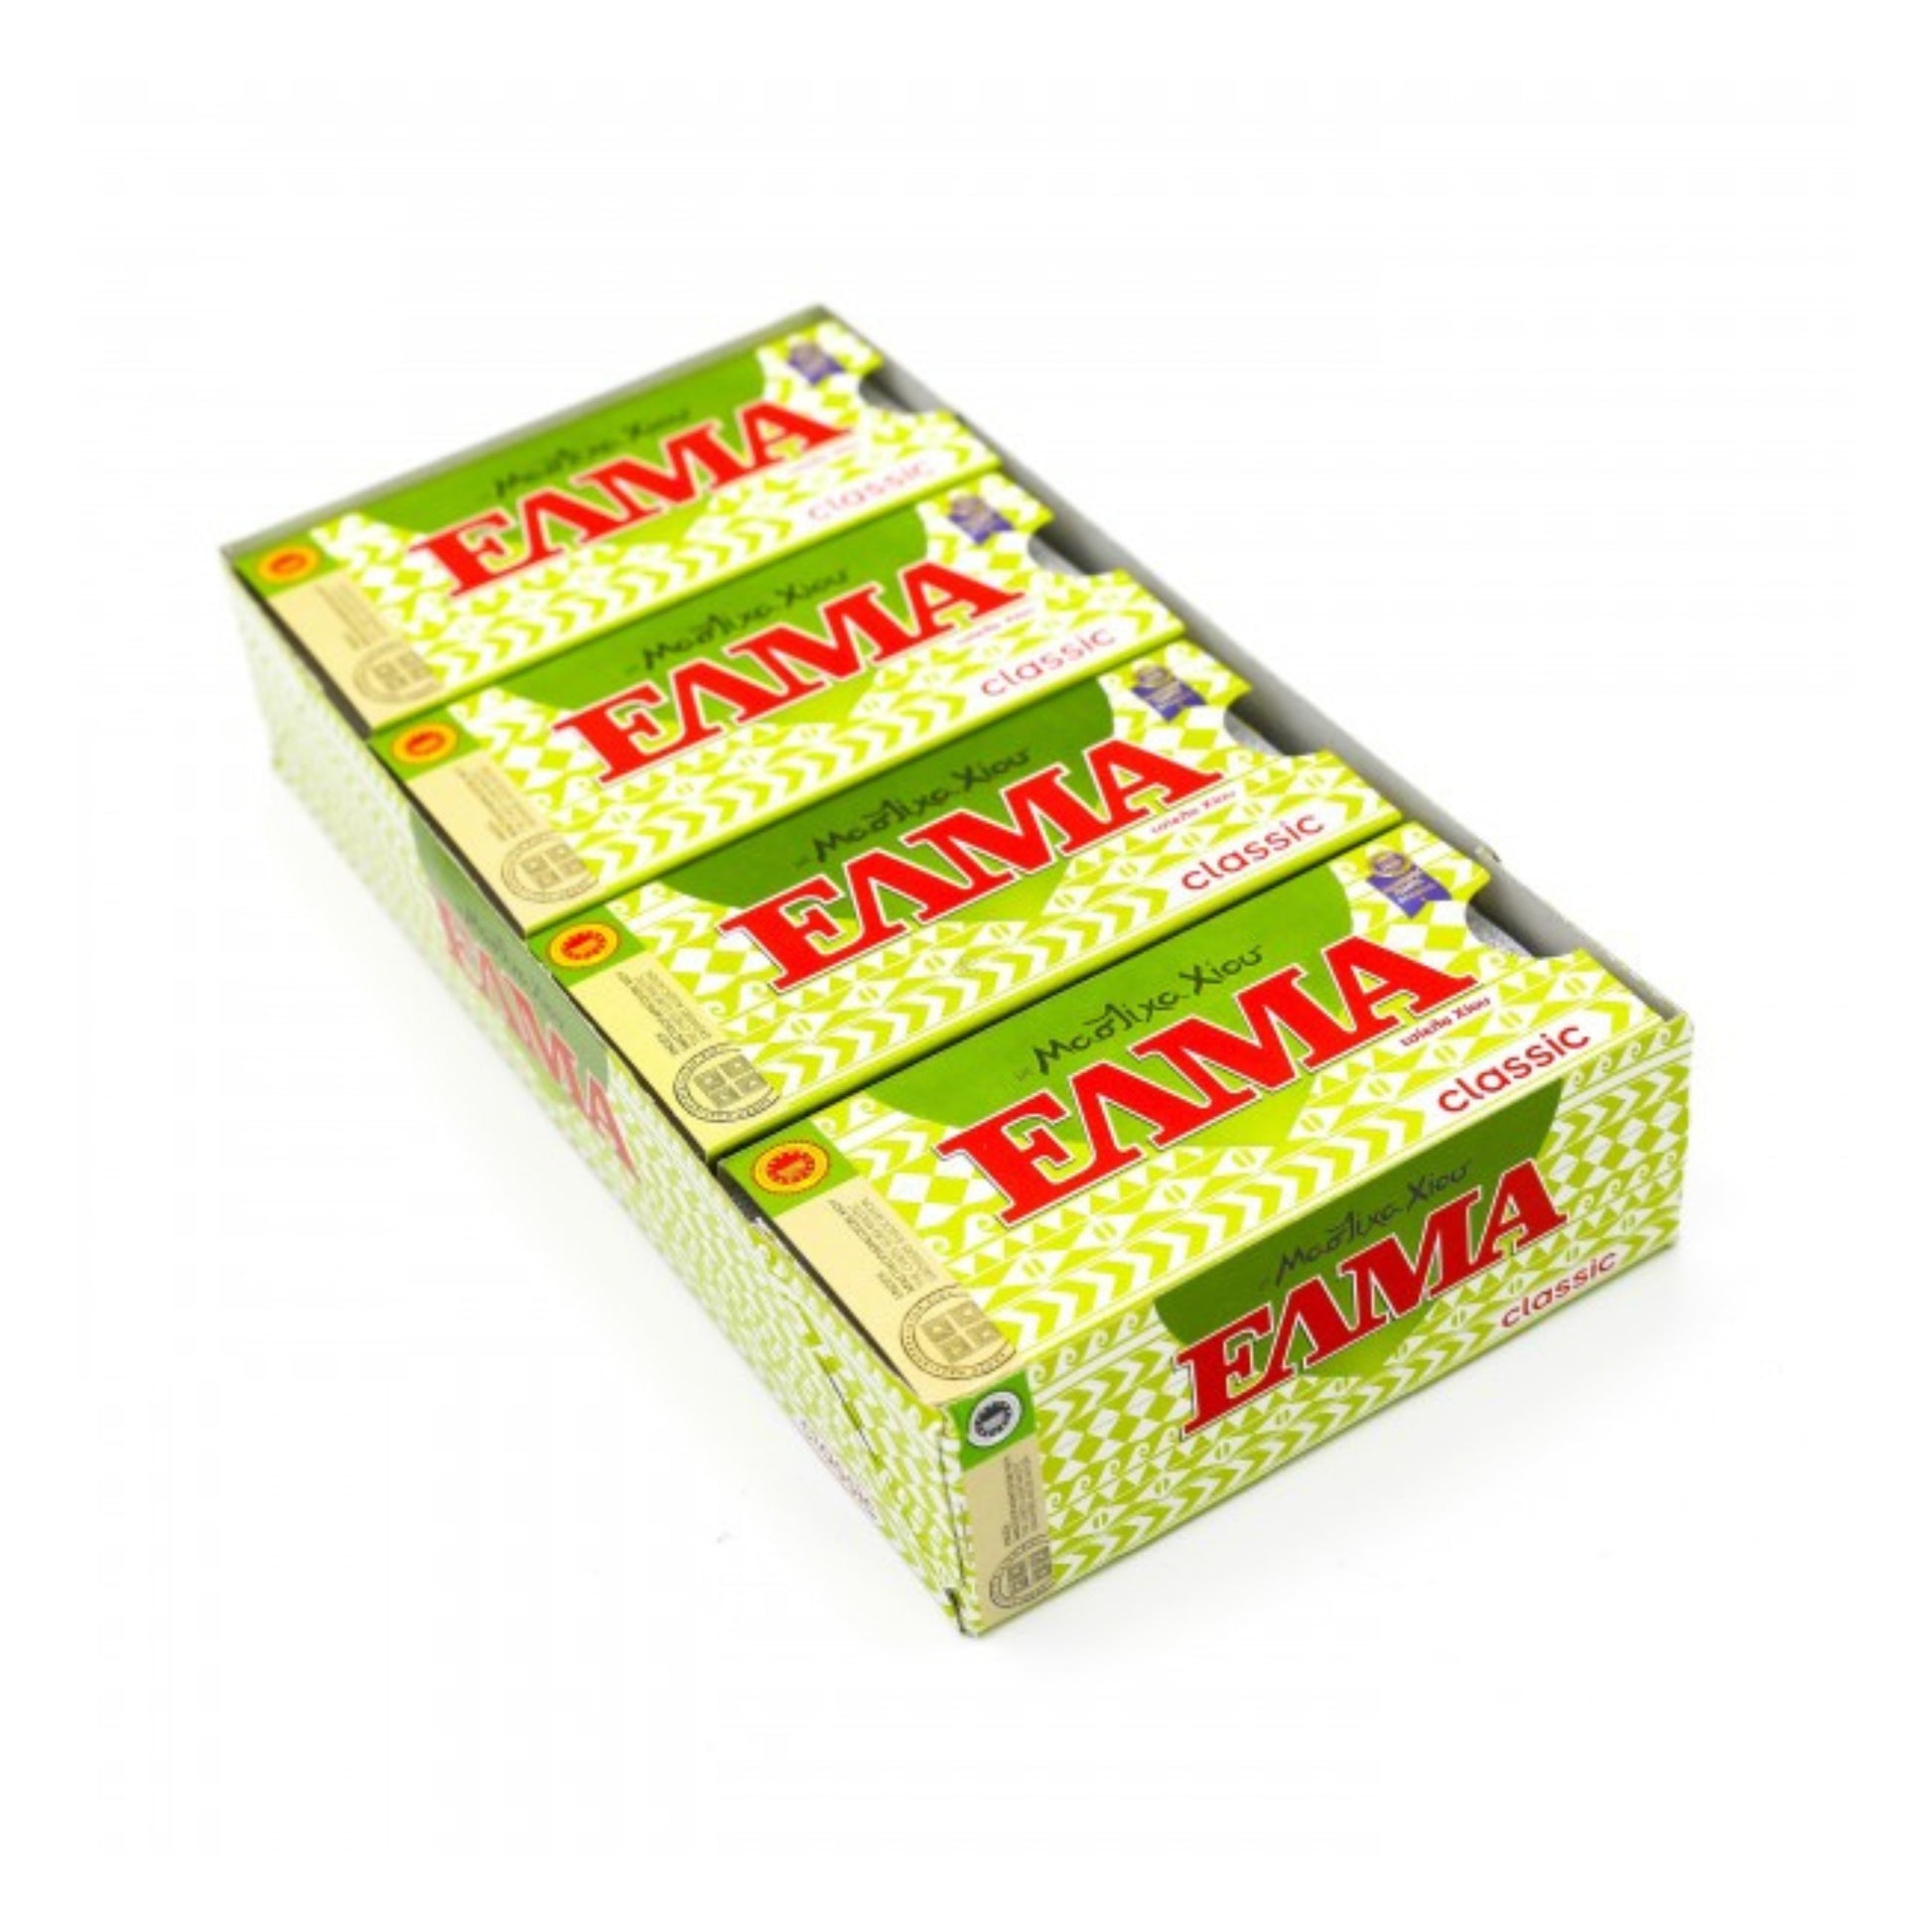 prodotti-greci-gomma-da-masticare-gusto-mastica-classic-20x13g-elma